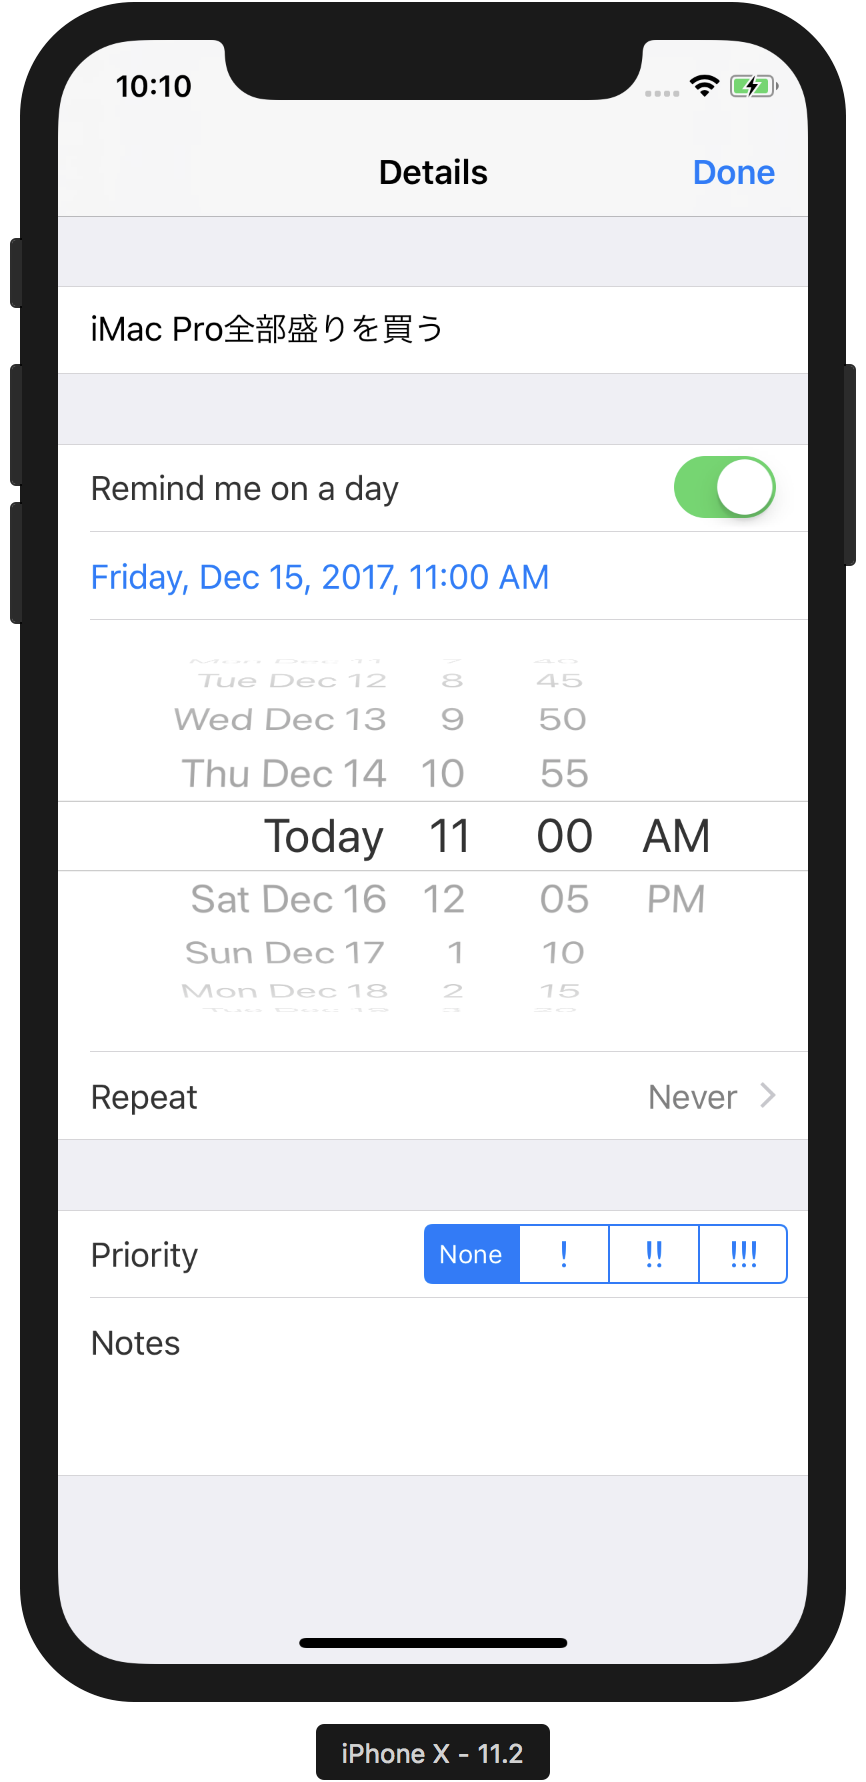 iPhone X Reminder app